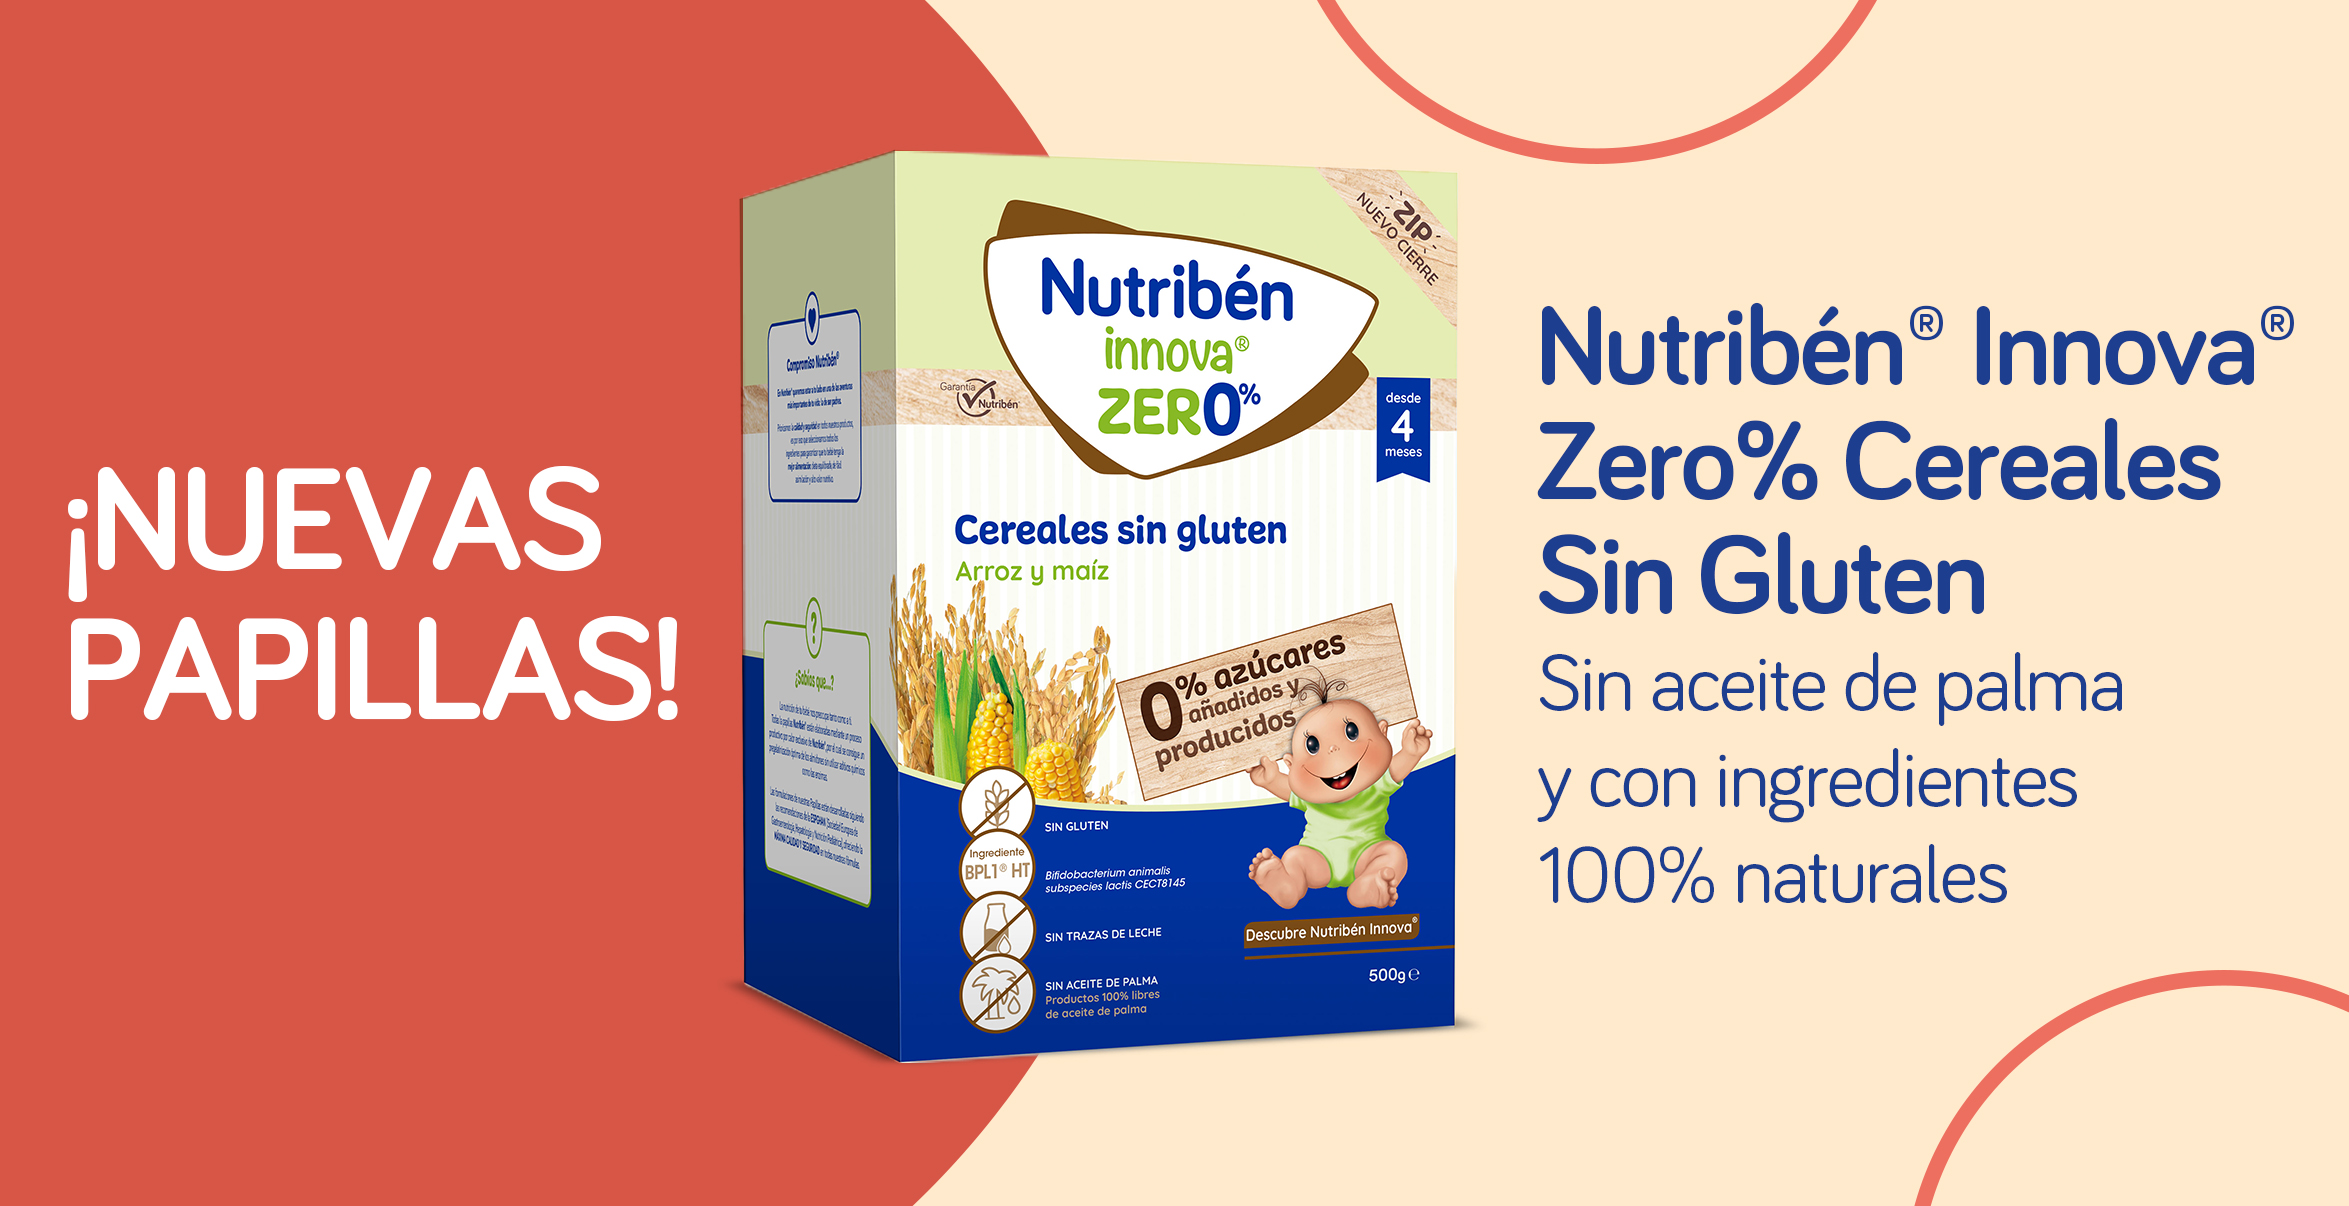 ¡Los cereales Innova® Zero%, sin azúcar añadido ni producido!